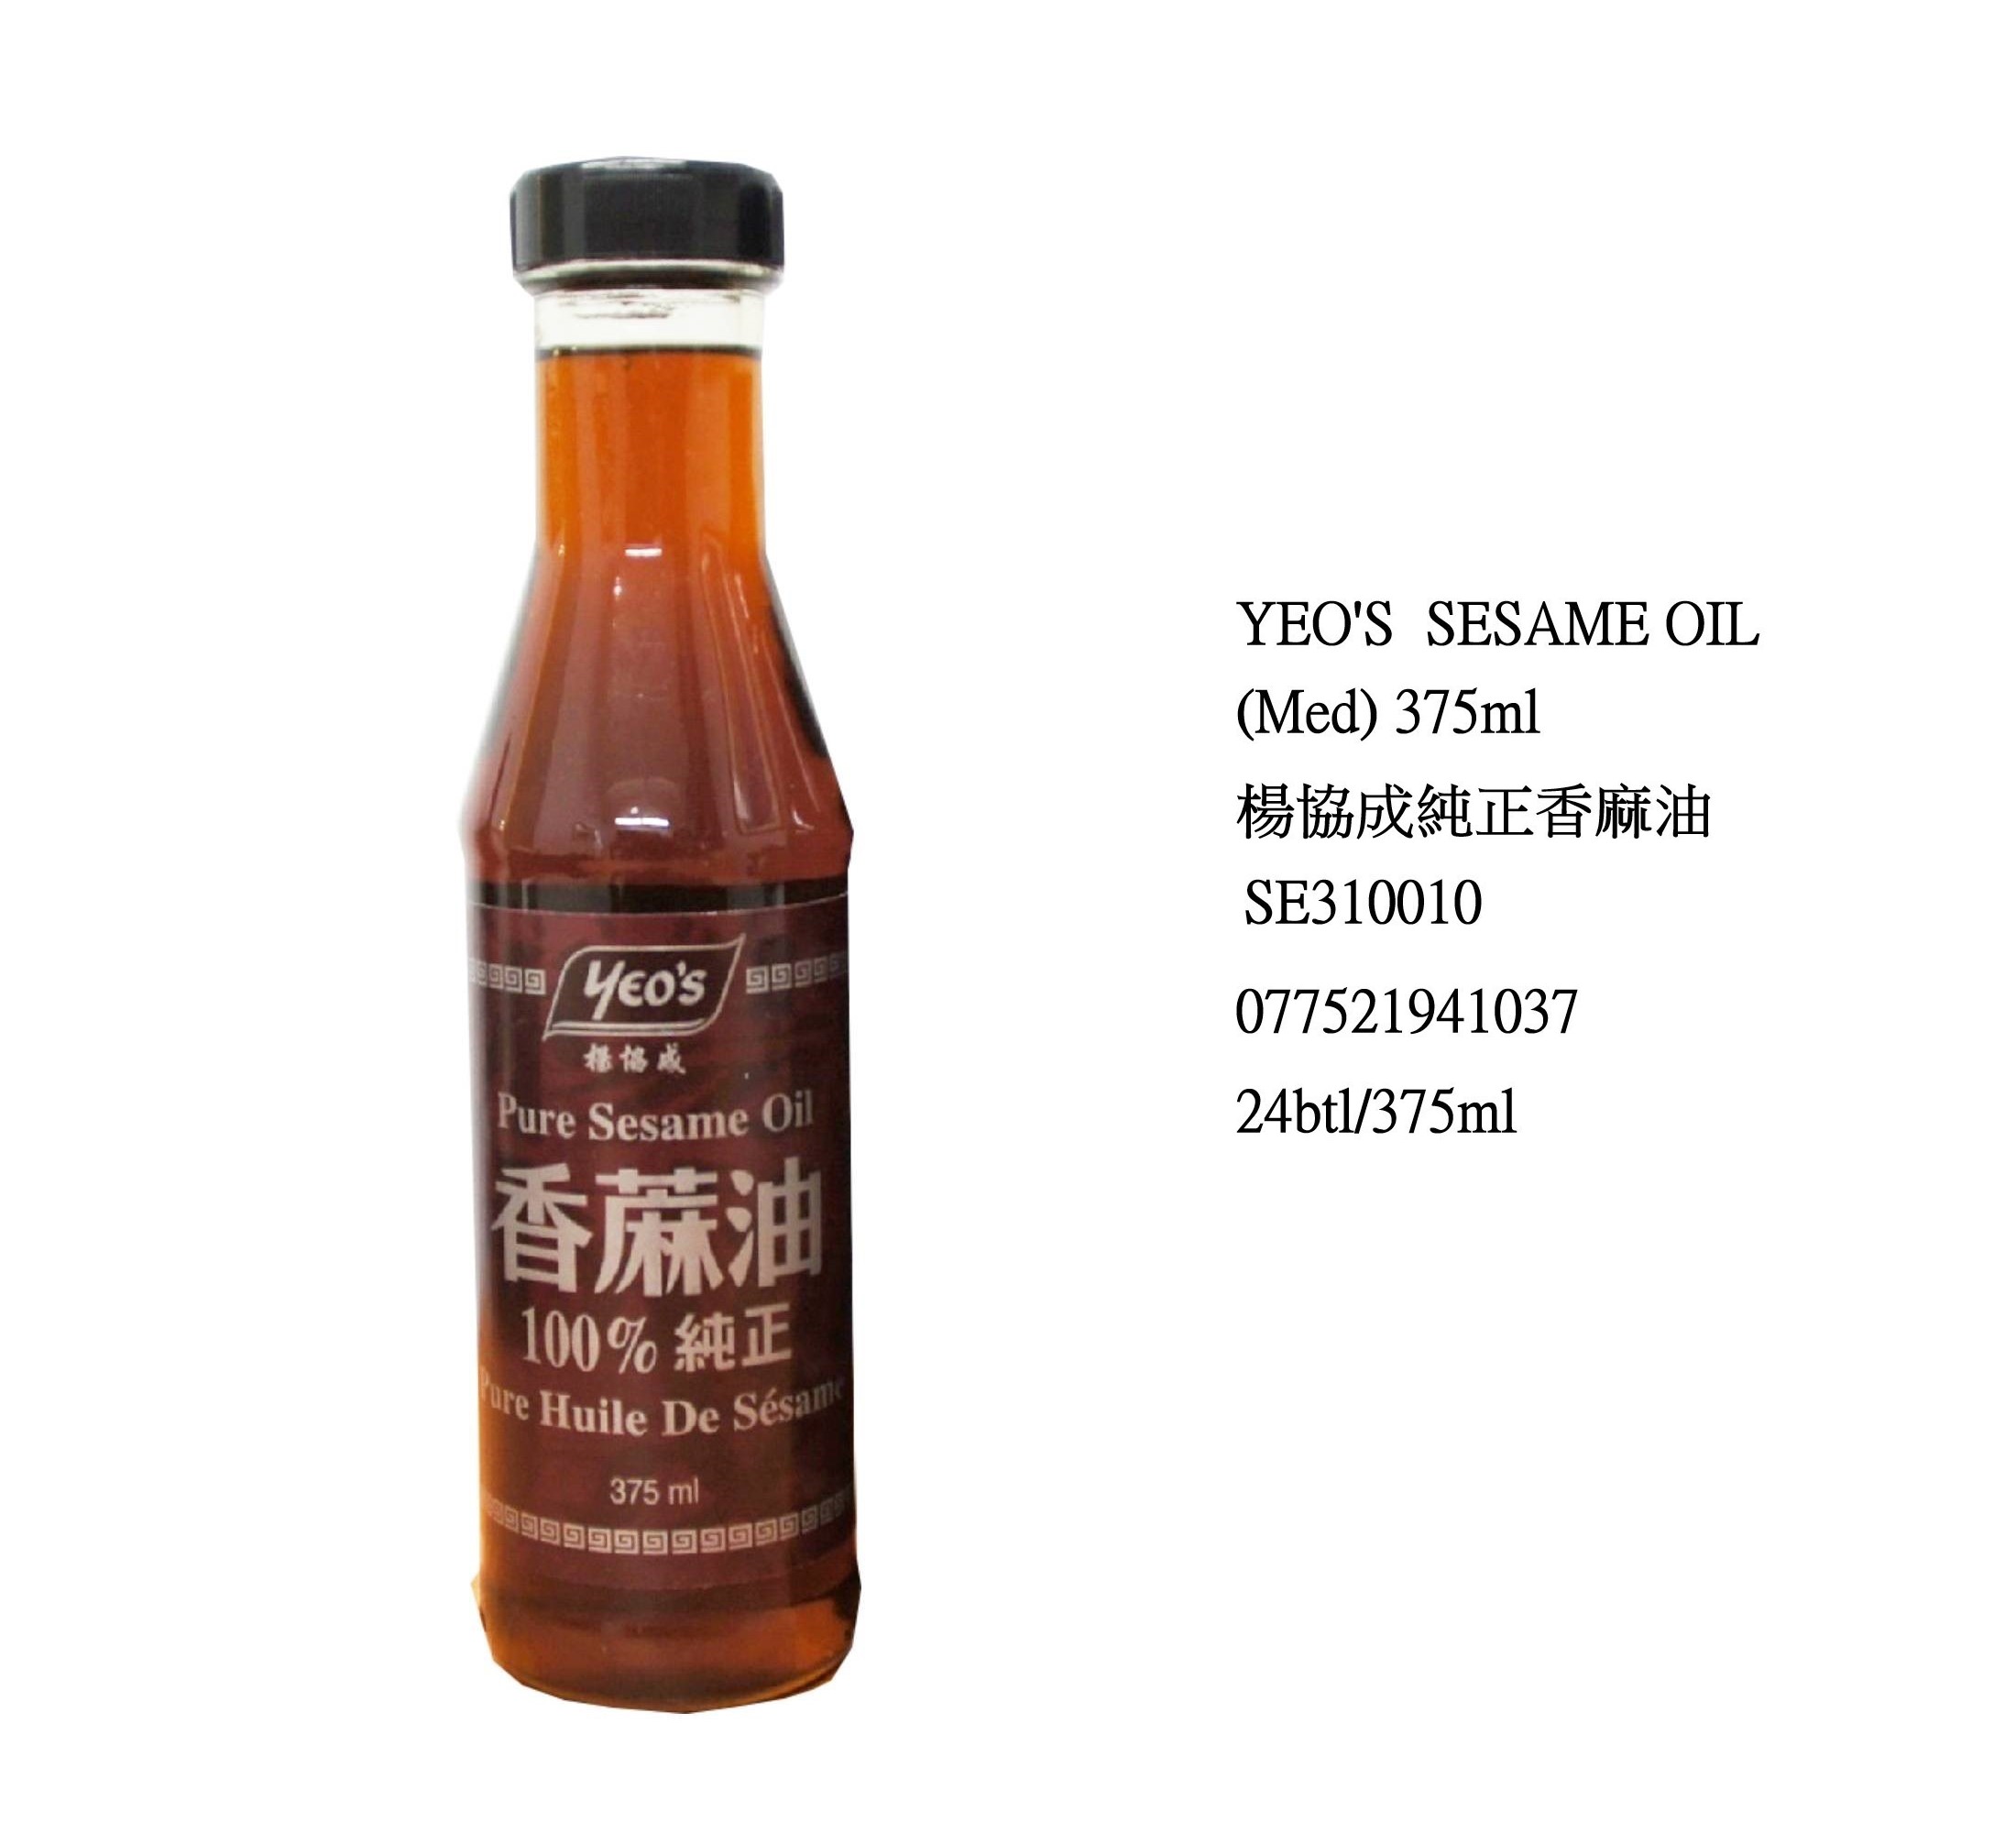 YEO'S SESAME OIL (MED) SE310010